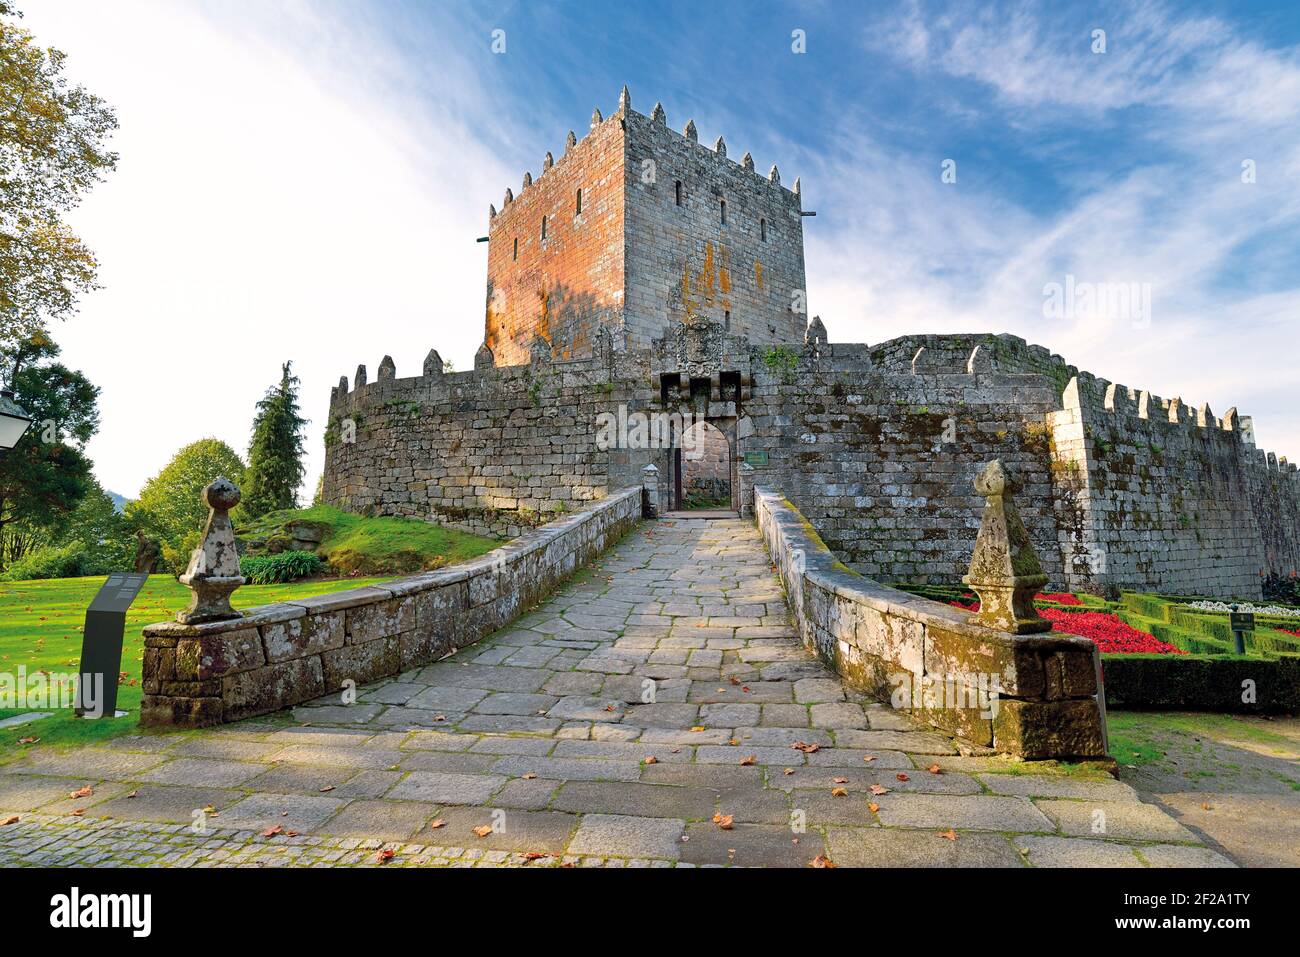 Ingresso principale di imponente castello medievale con torre e giardini intorno Foto Stock